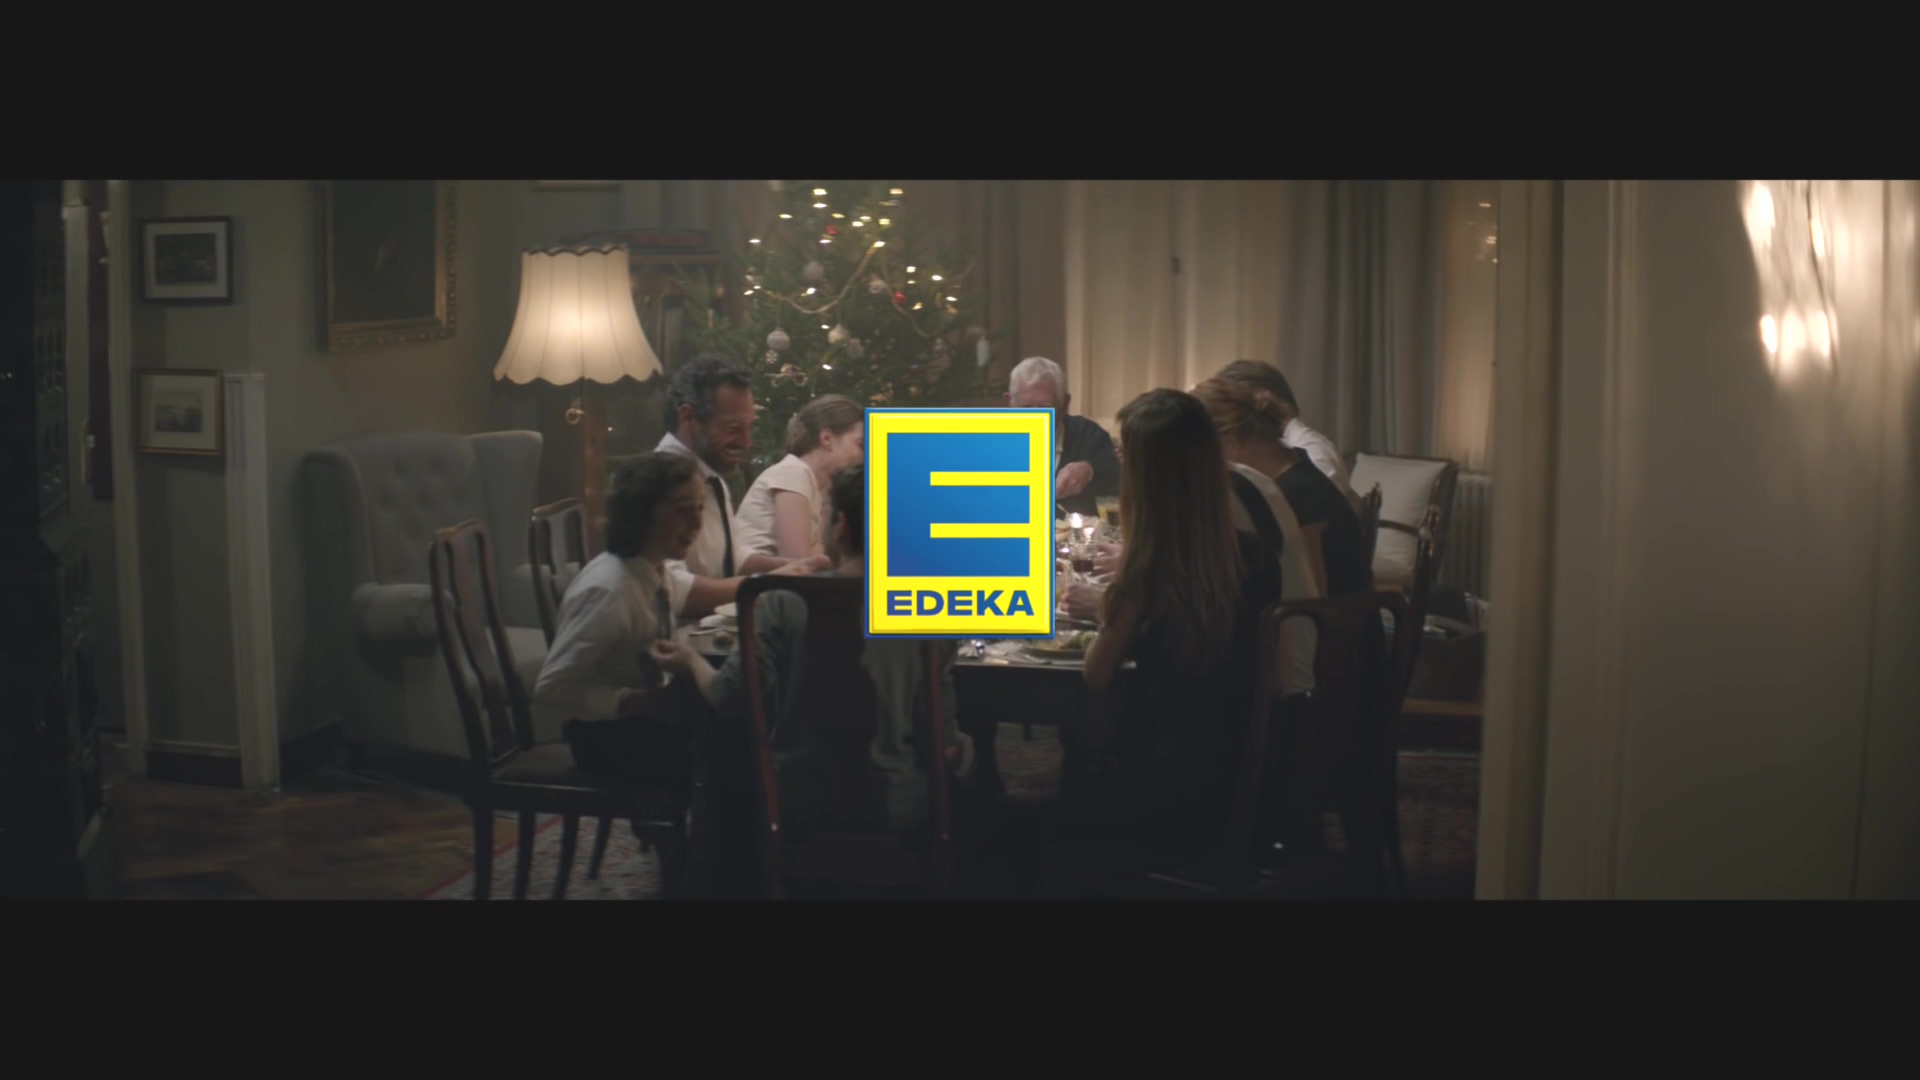 EDEKA Weihnachtsclip(독일 슈퍼마켓 크리마스 광고) - #heimkommen - YouTube (1080p).mp4_20151214_001832.515.jpg